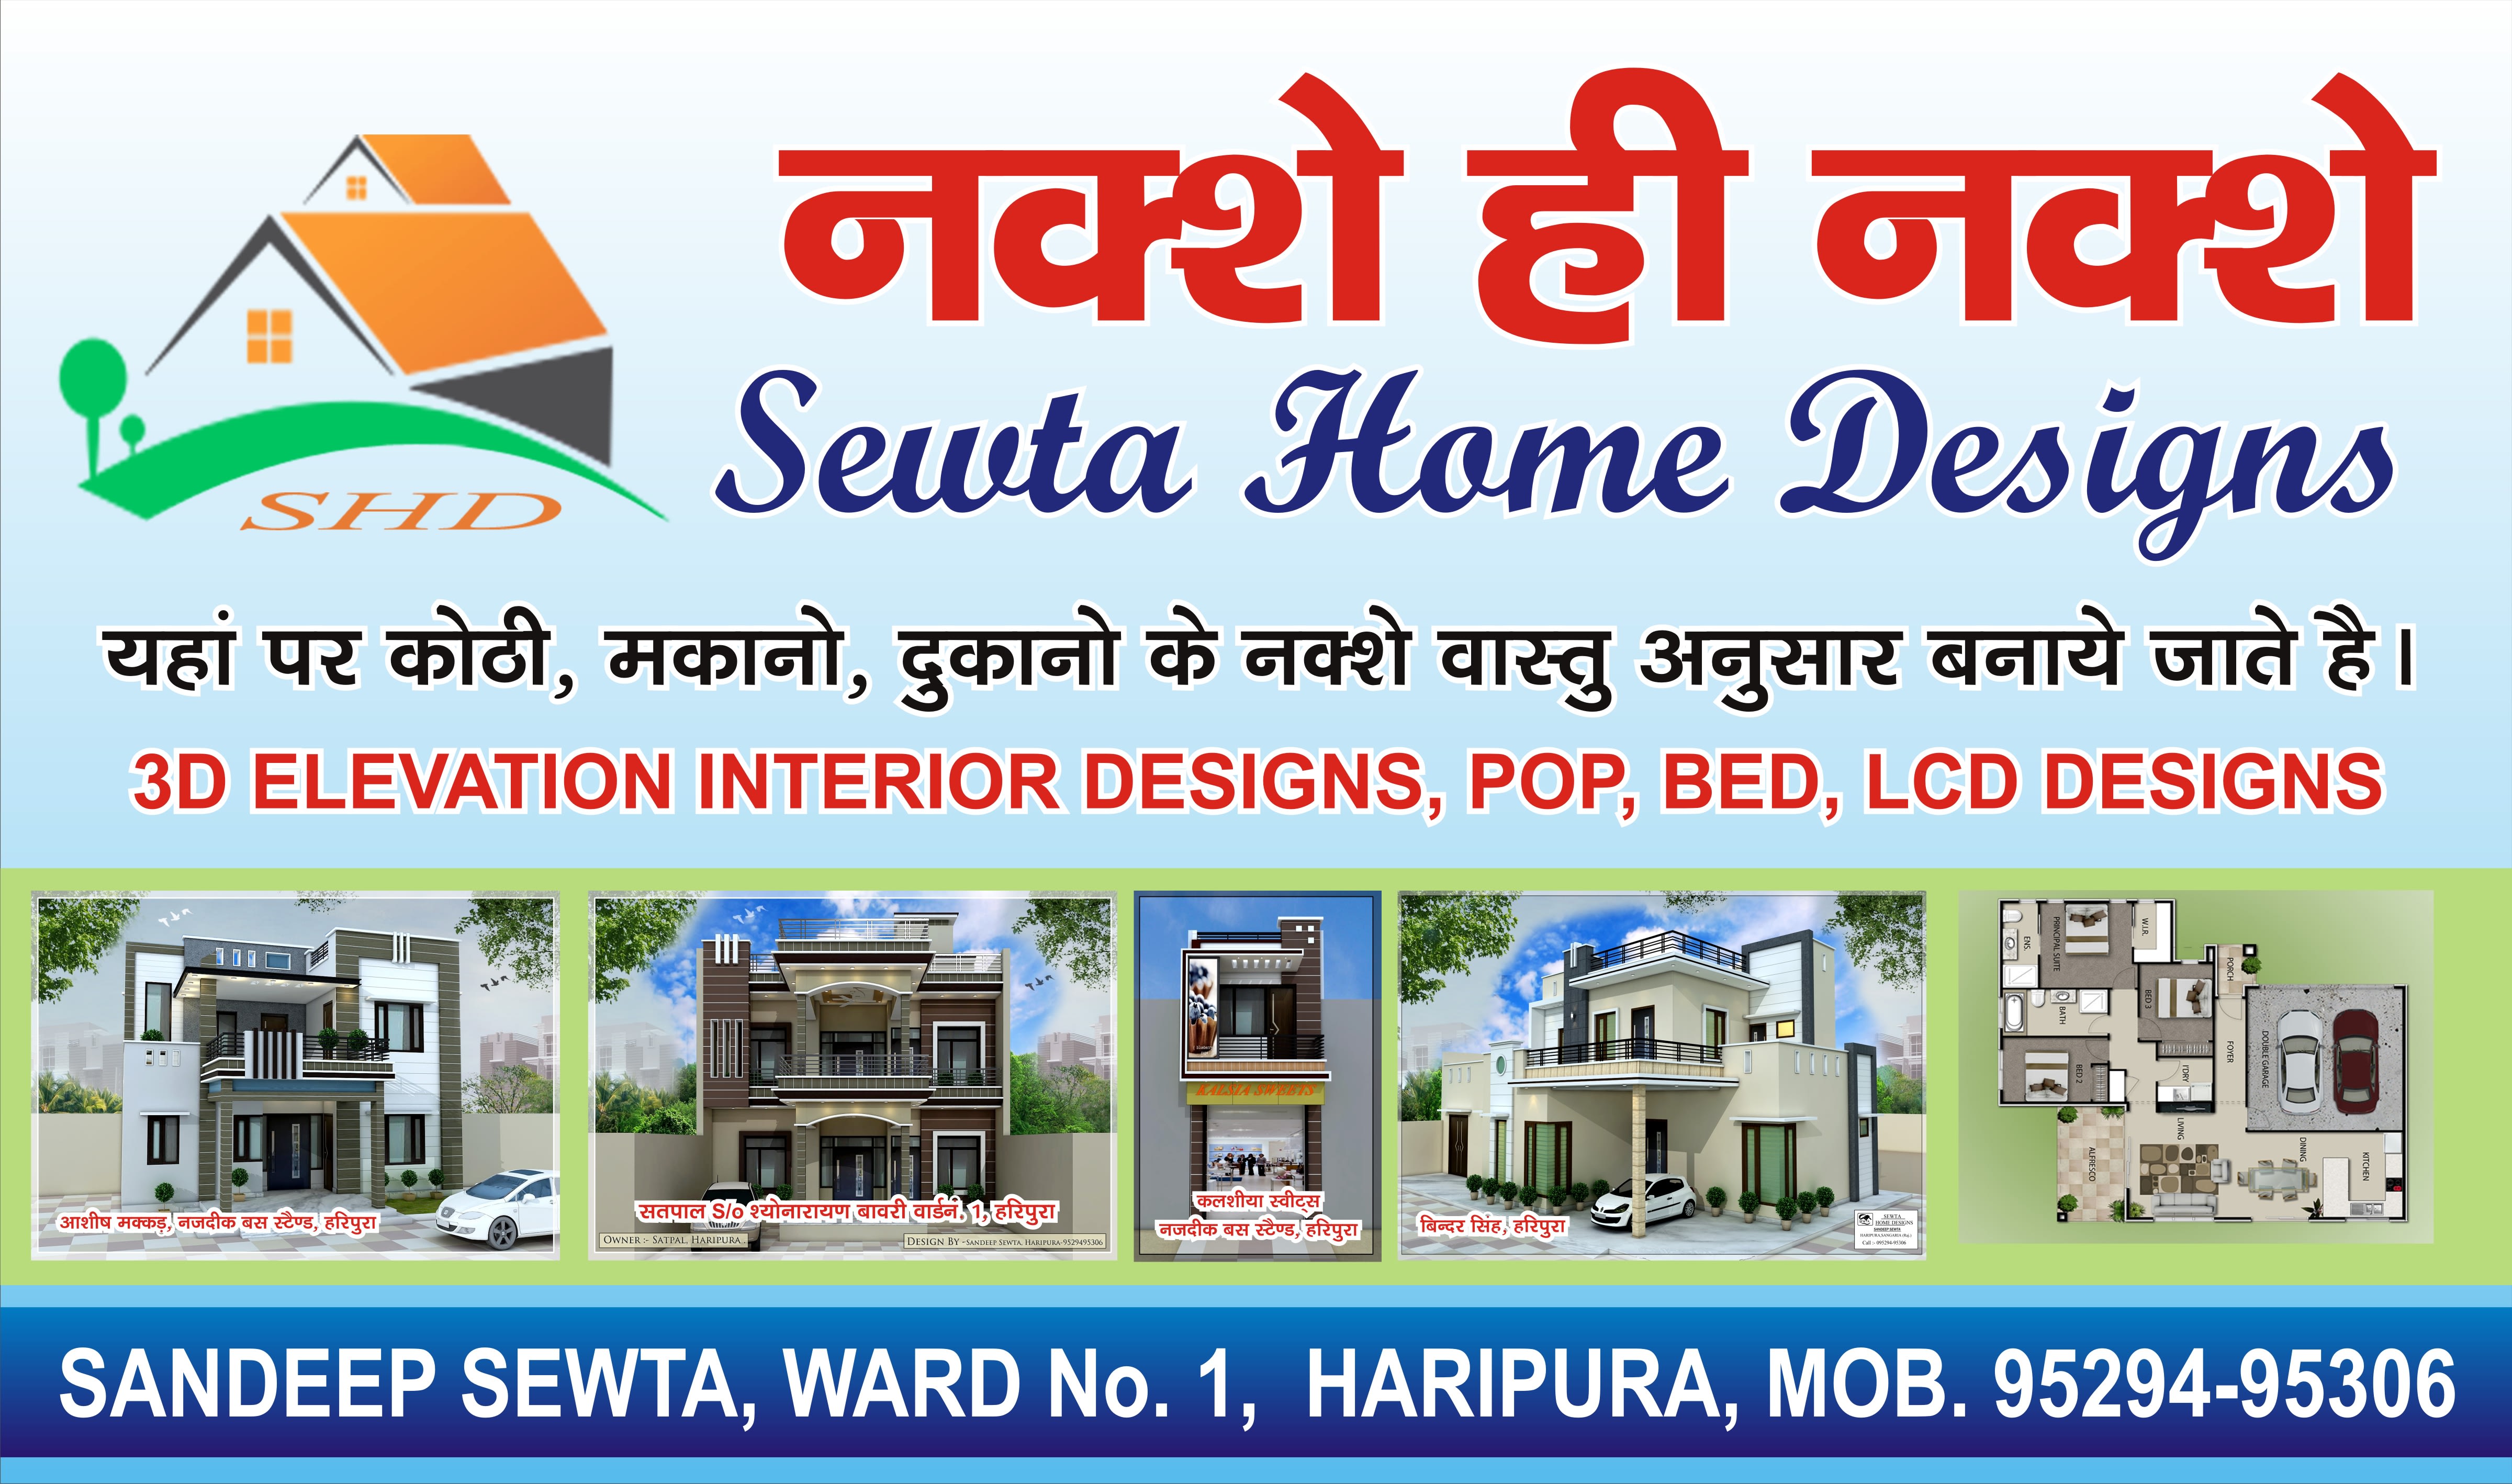 Sewta Home Designs